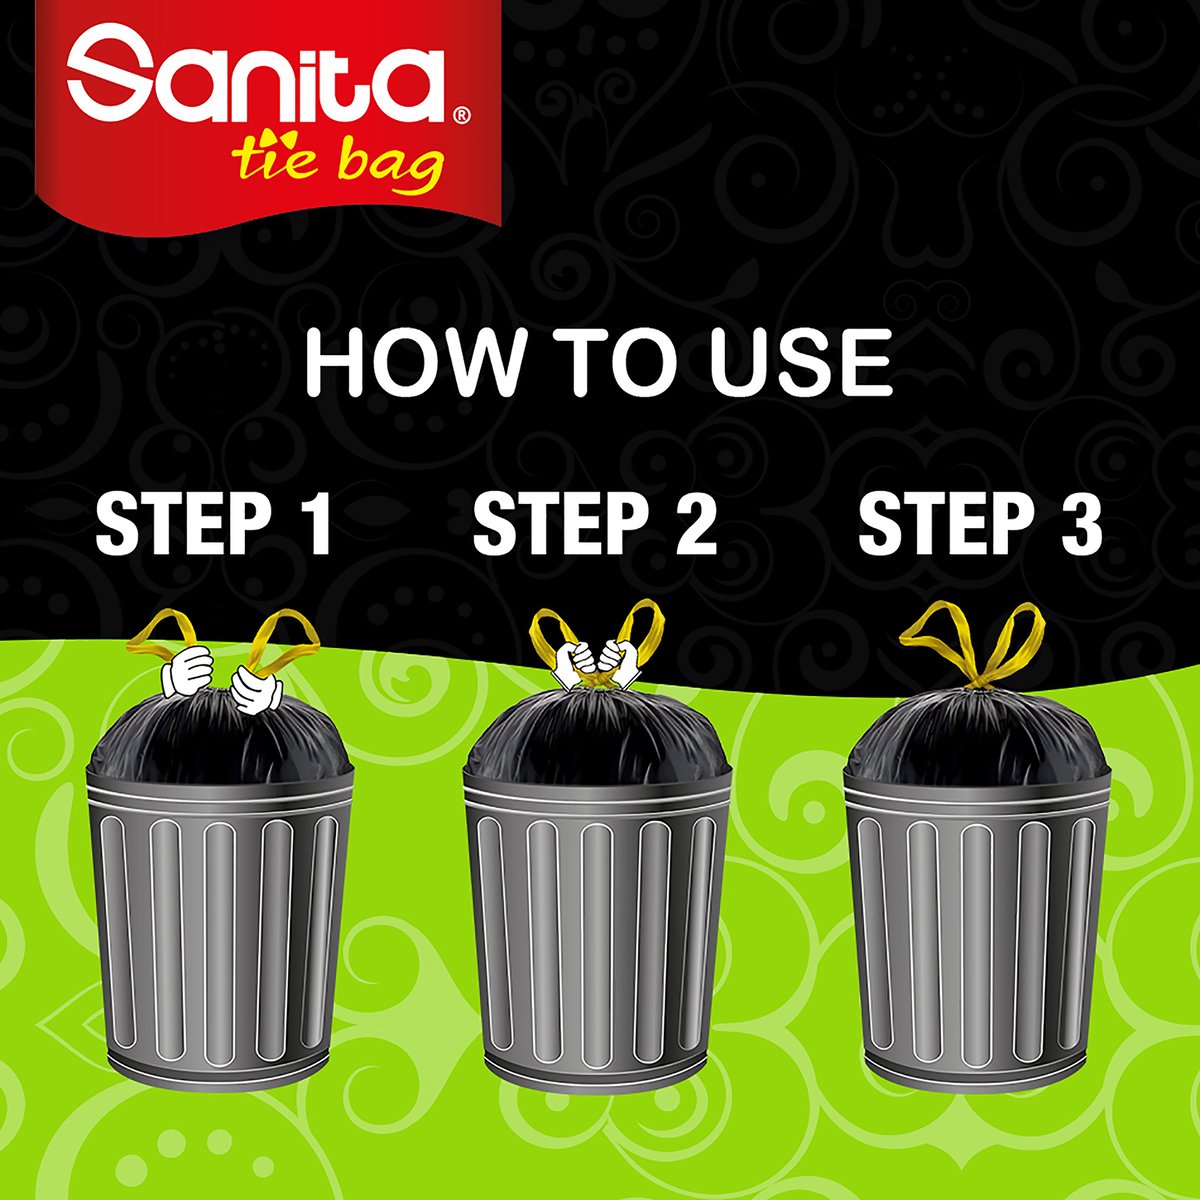 Sanita Tie Garbage Bag Oxo-Biodegradable Medium 30 Gallons Size 78 x 73 cm 25 pcs